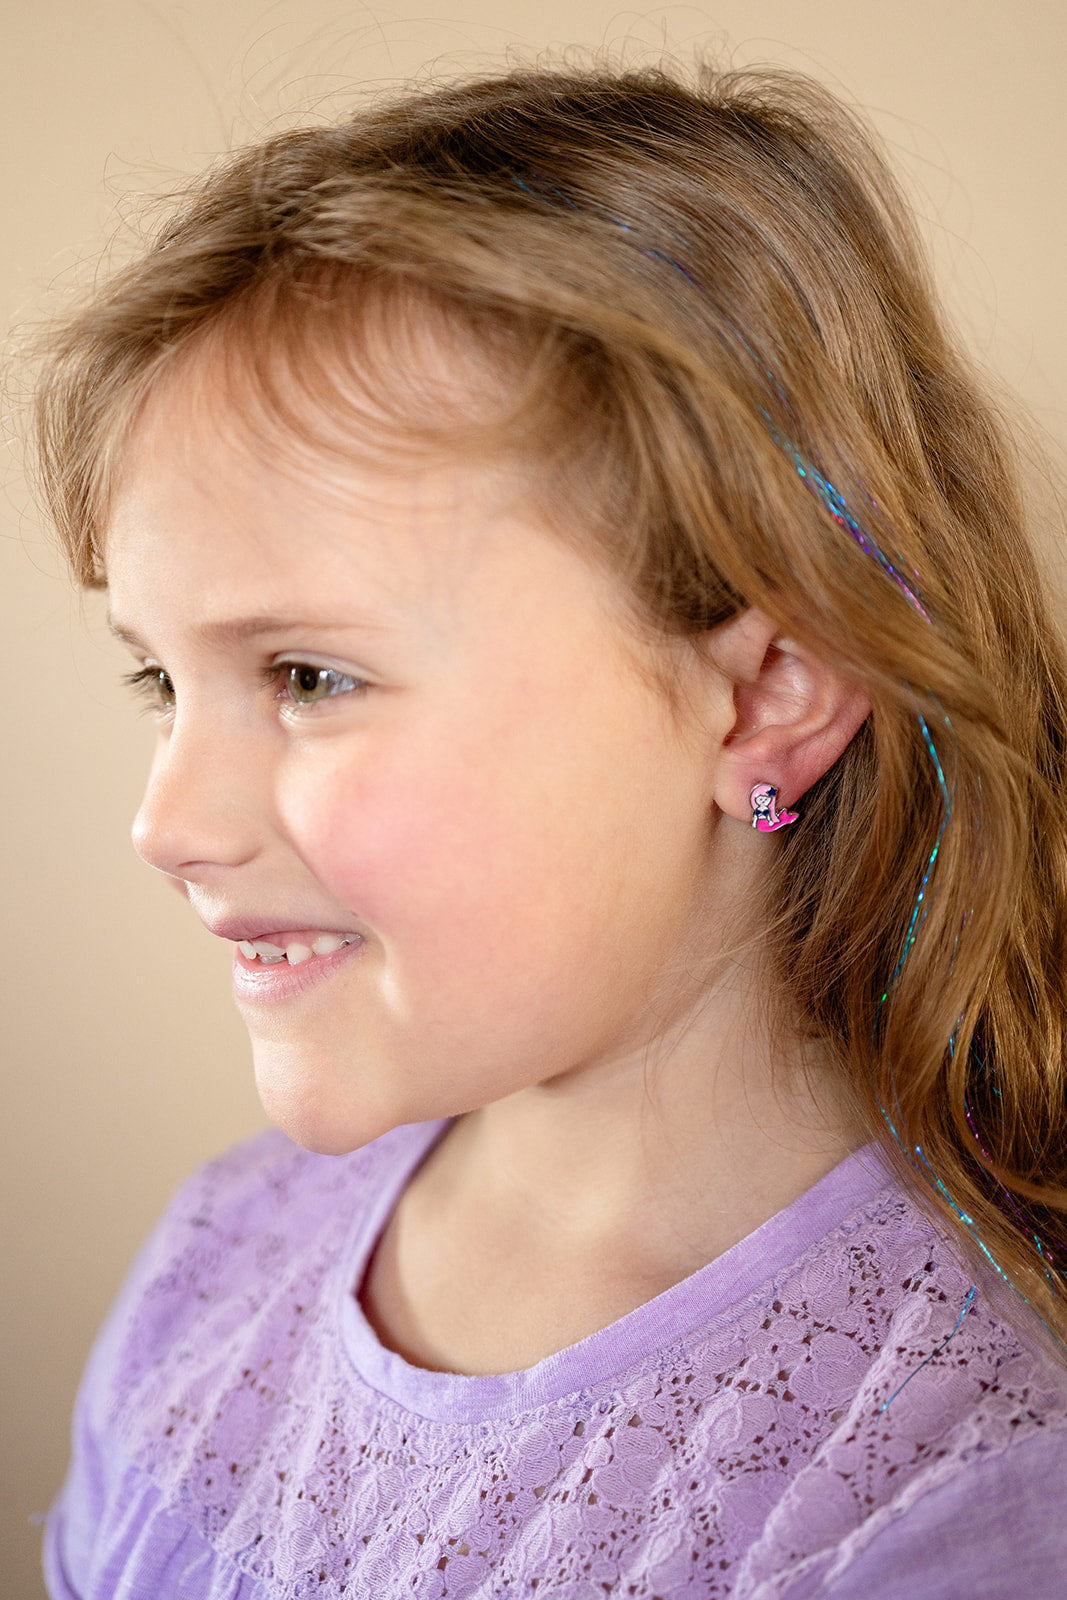 Pink Hair Mermaid Enamel Post Stud Earring Children's Jewelry